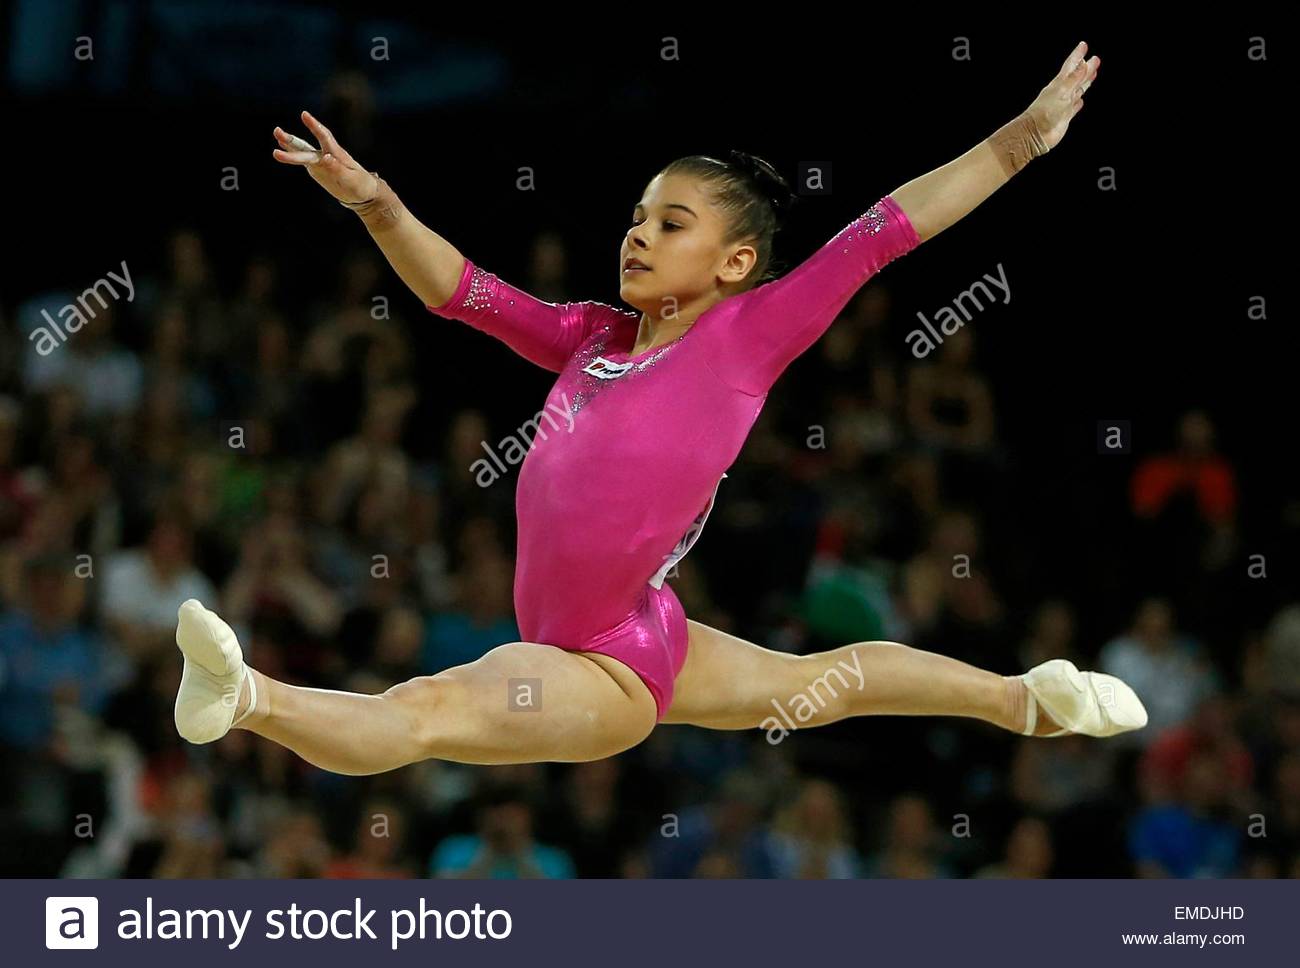 Romanian Gymnasts Free